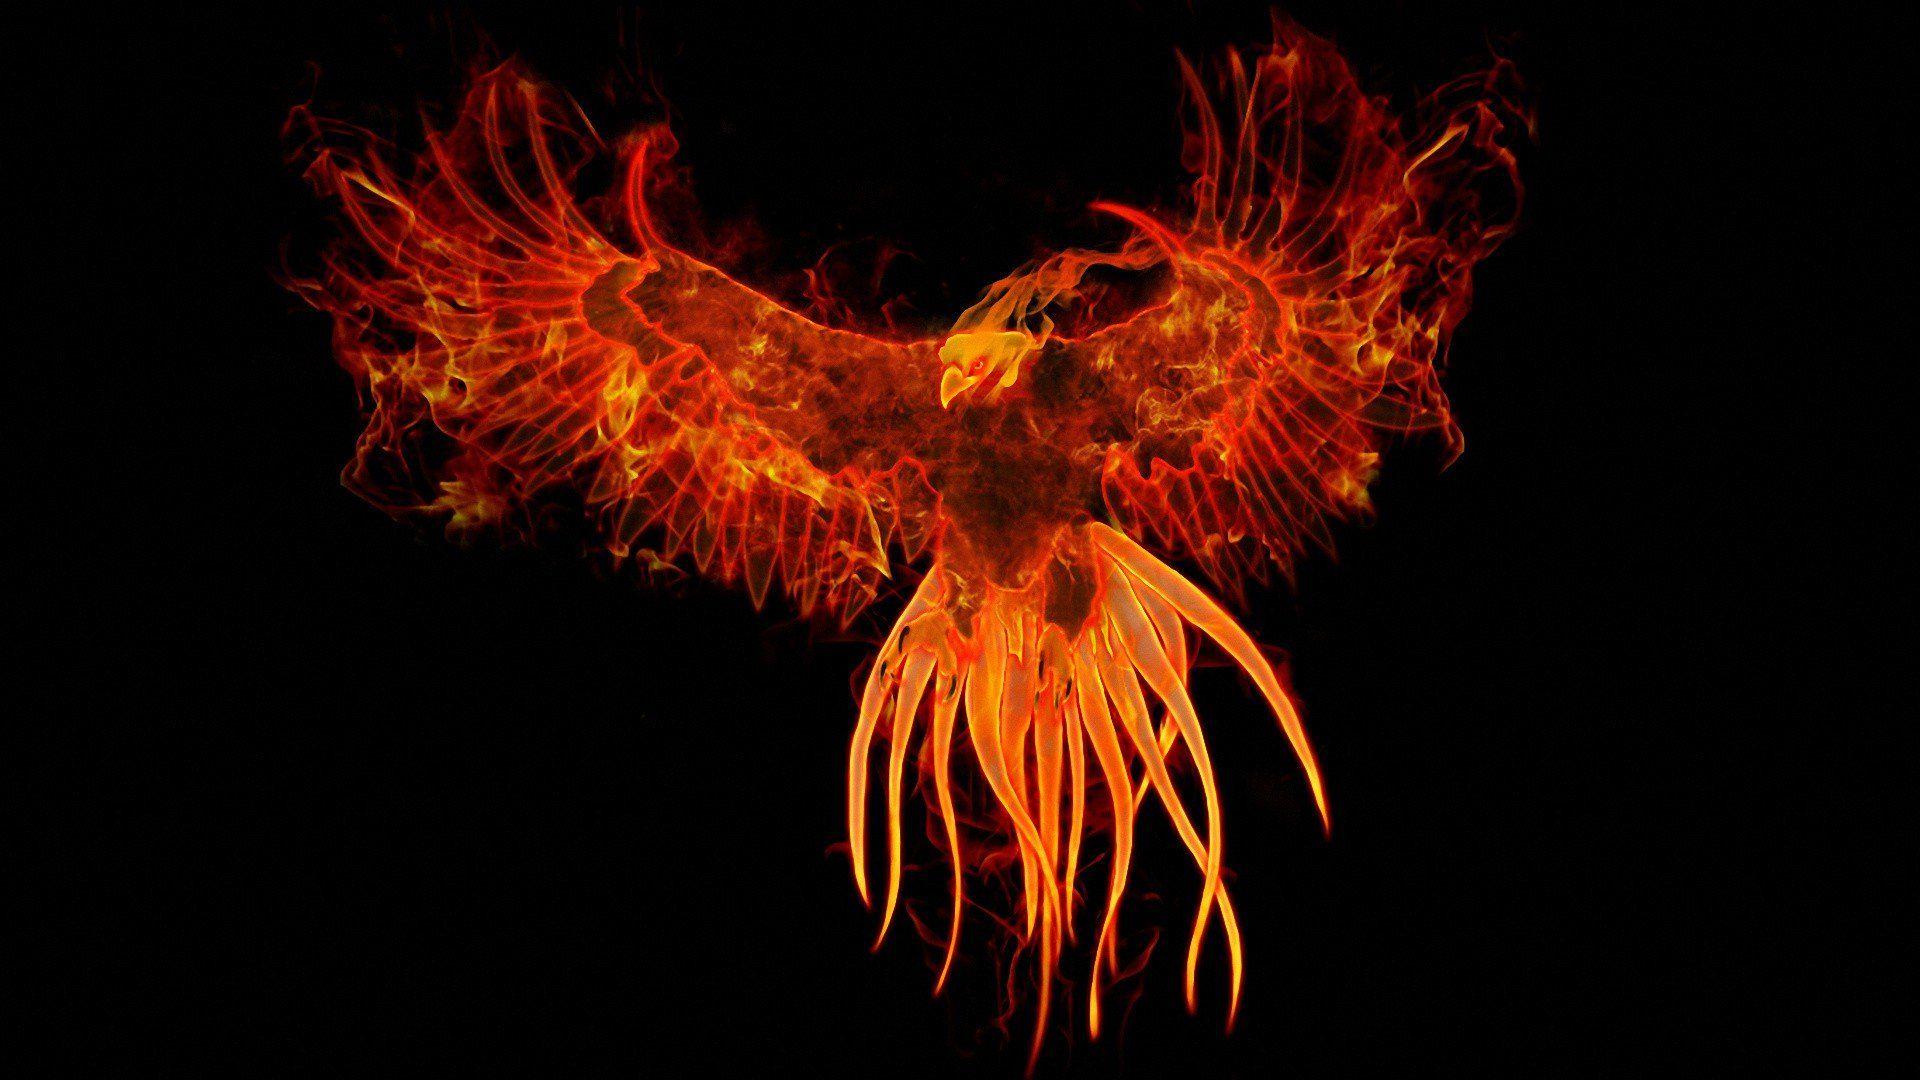 birds fire phoenix fantasy art digital art artwork mythology